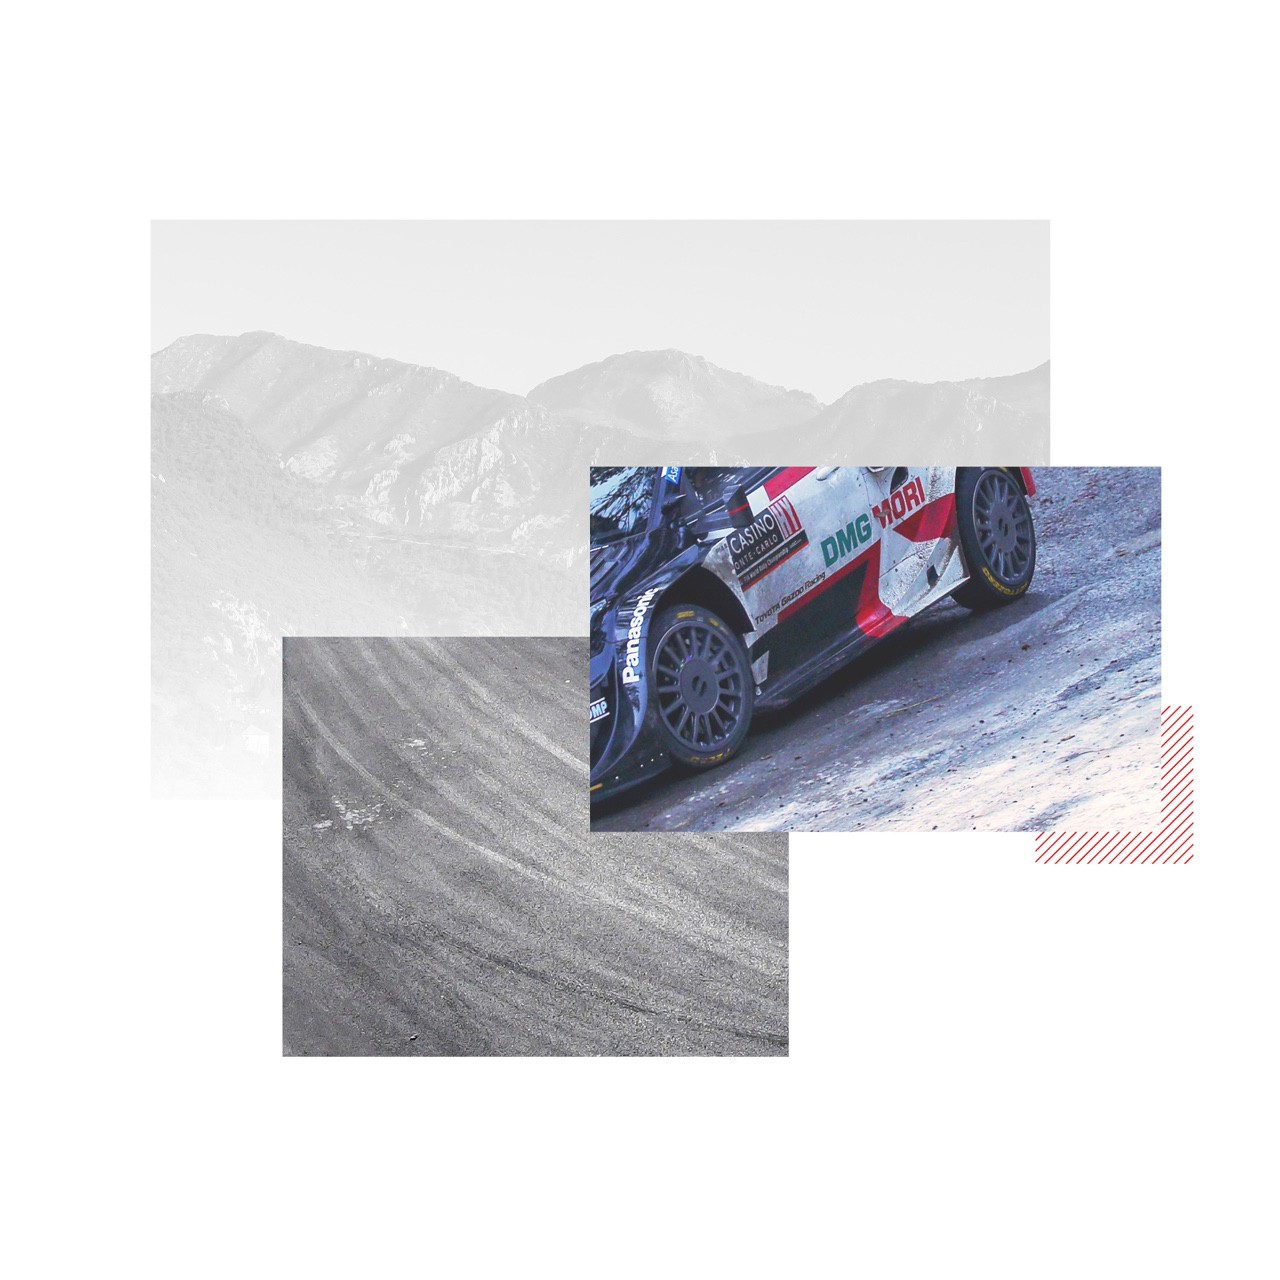 Toyota Gazoo Racing - WRC